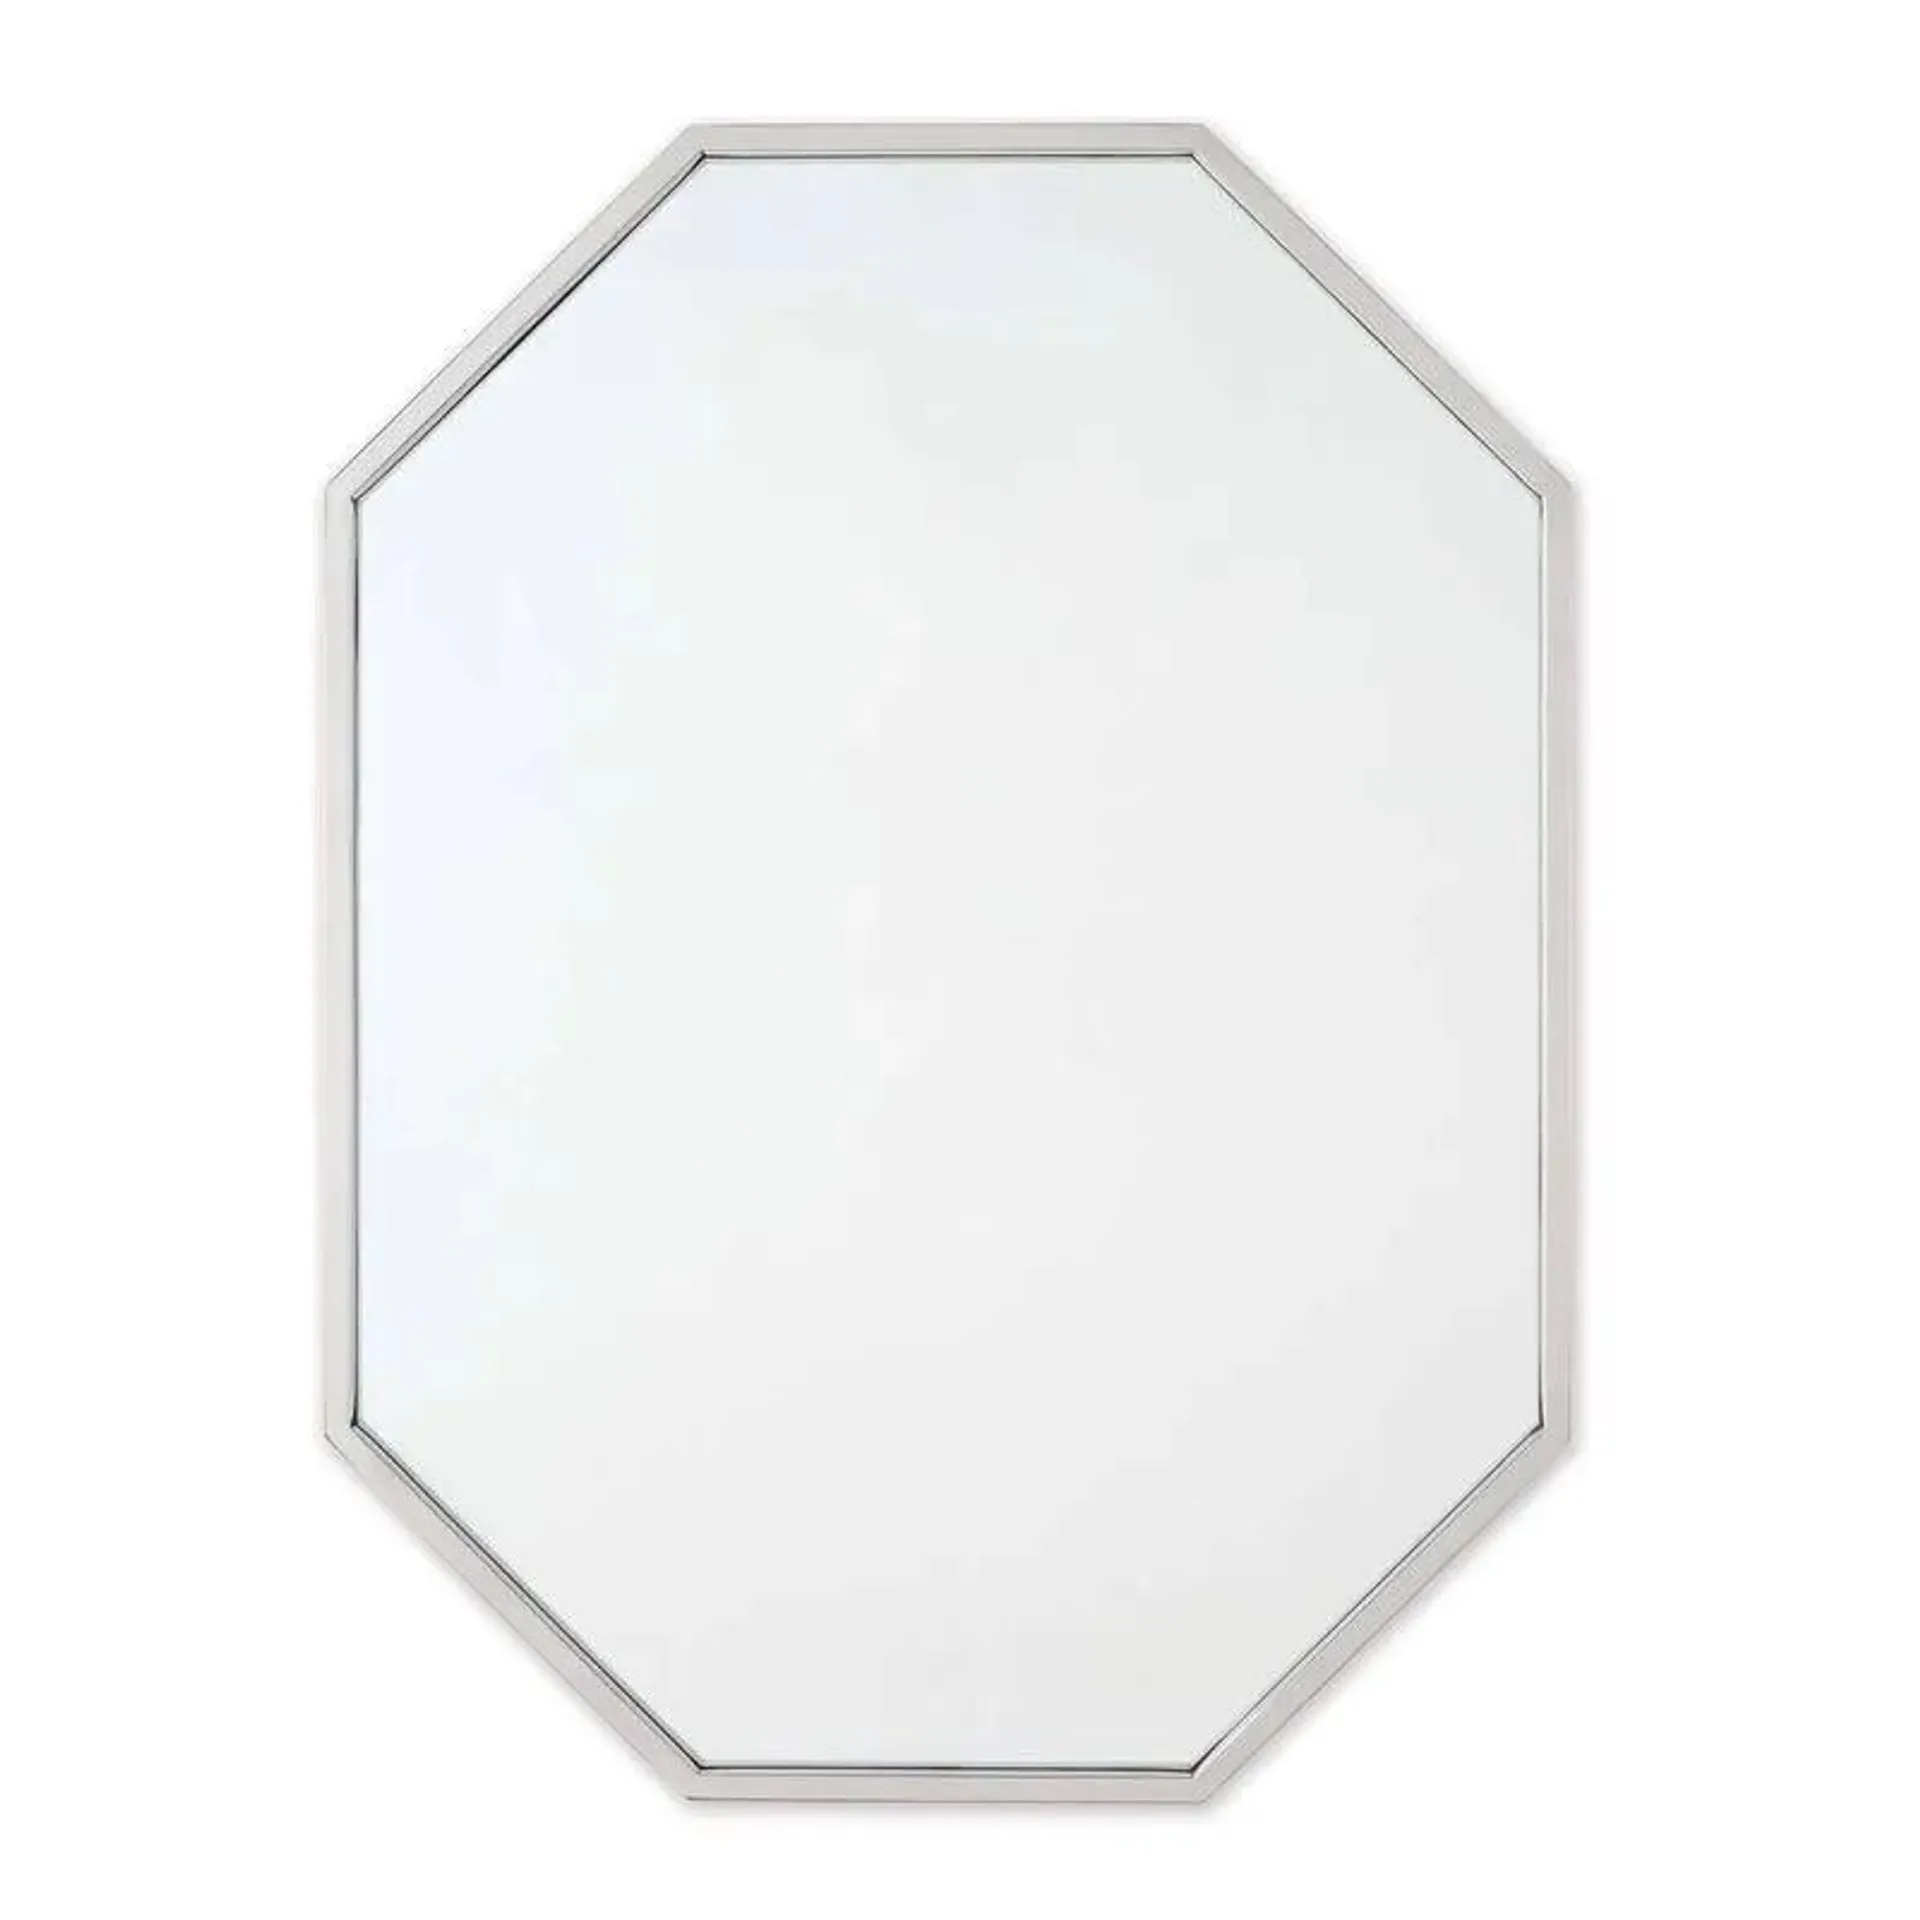 Hale Wall Mirror Polished Nickel